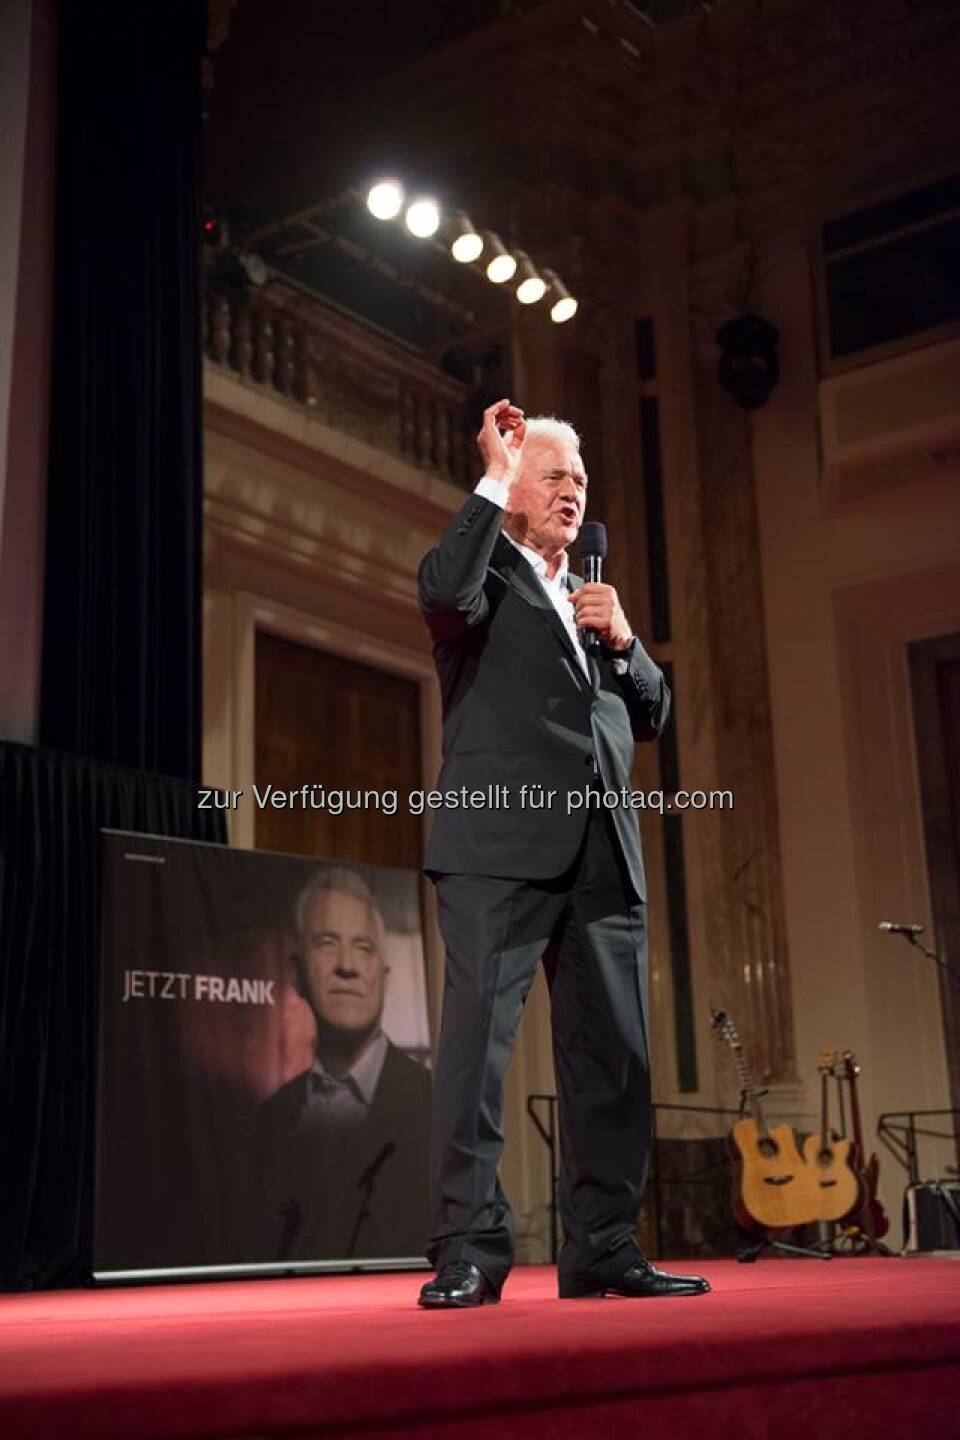 Frank Stronach bei seiner Rede in der Hofburg Wien: Wir müssen den Leuten zu verstehen geben, dass es eine einmalige Chance ist, das System zu verändern. (mit freundlicher Genehmigung vom Team Stronach)